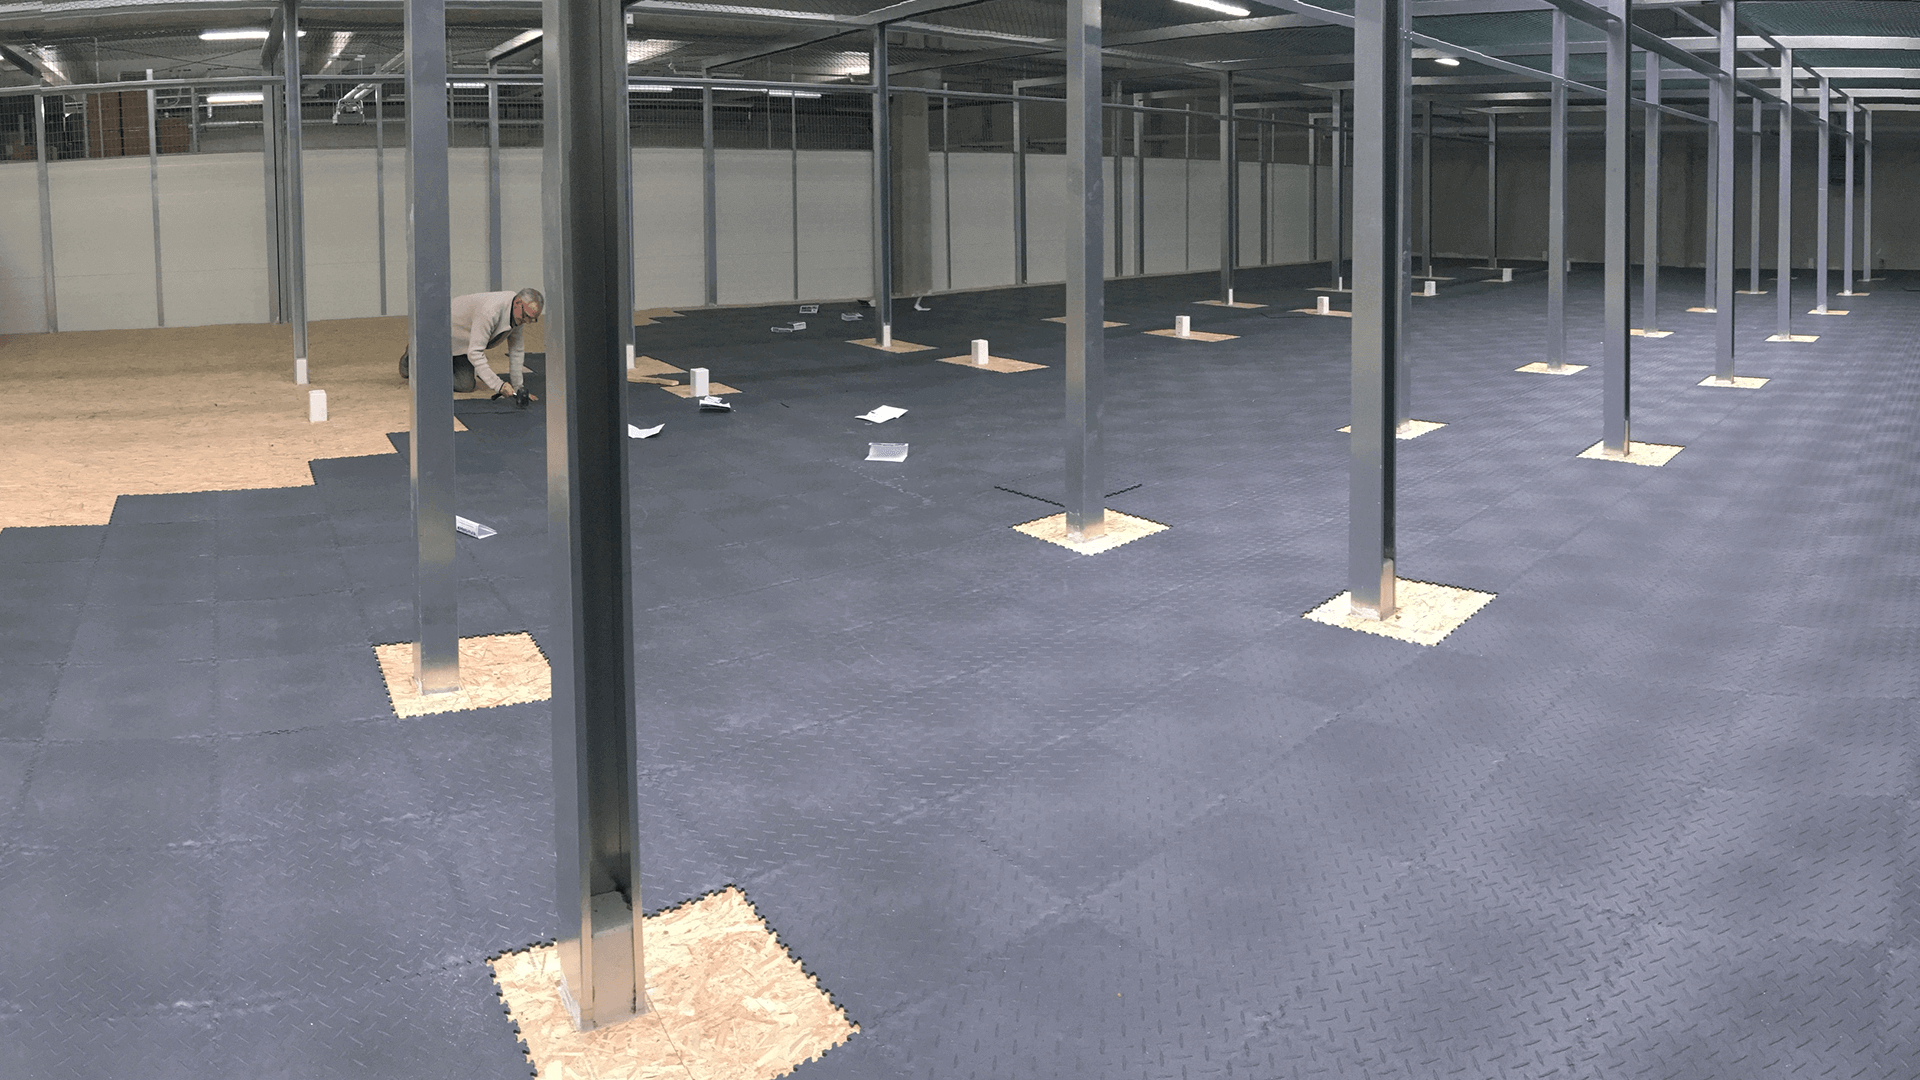 outdoor floor mats